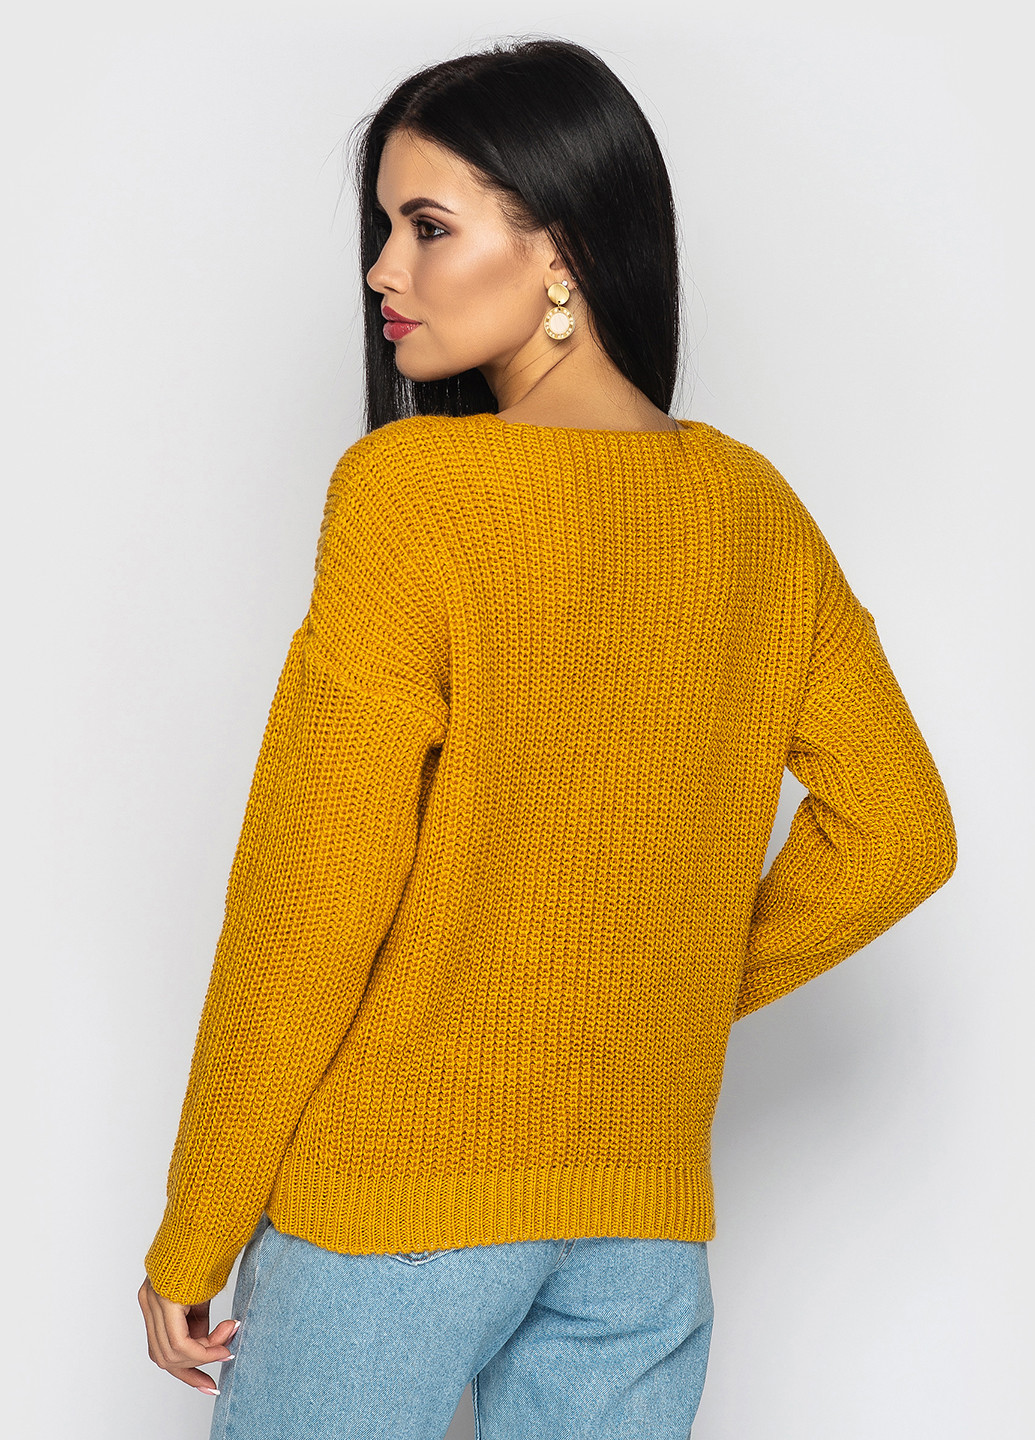 Горчичный демисезонный пуловер пуловер Larionoff